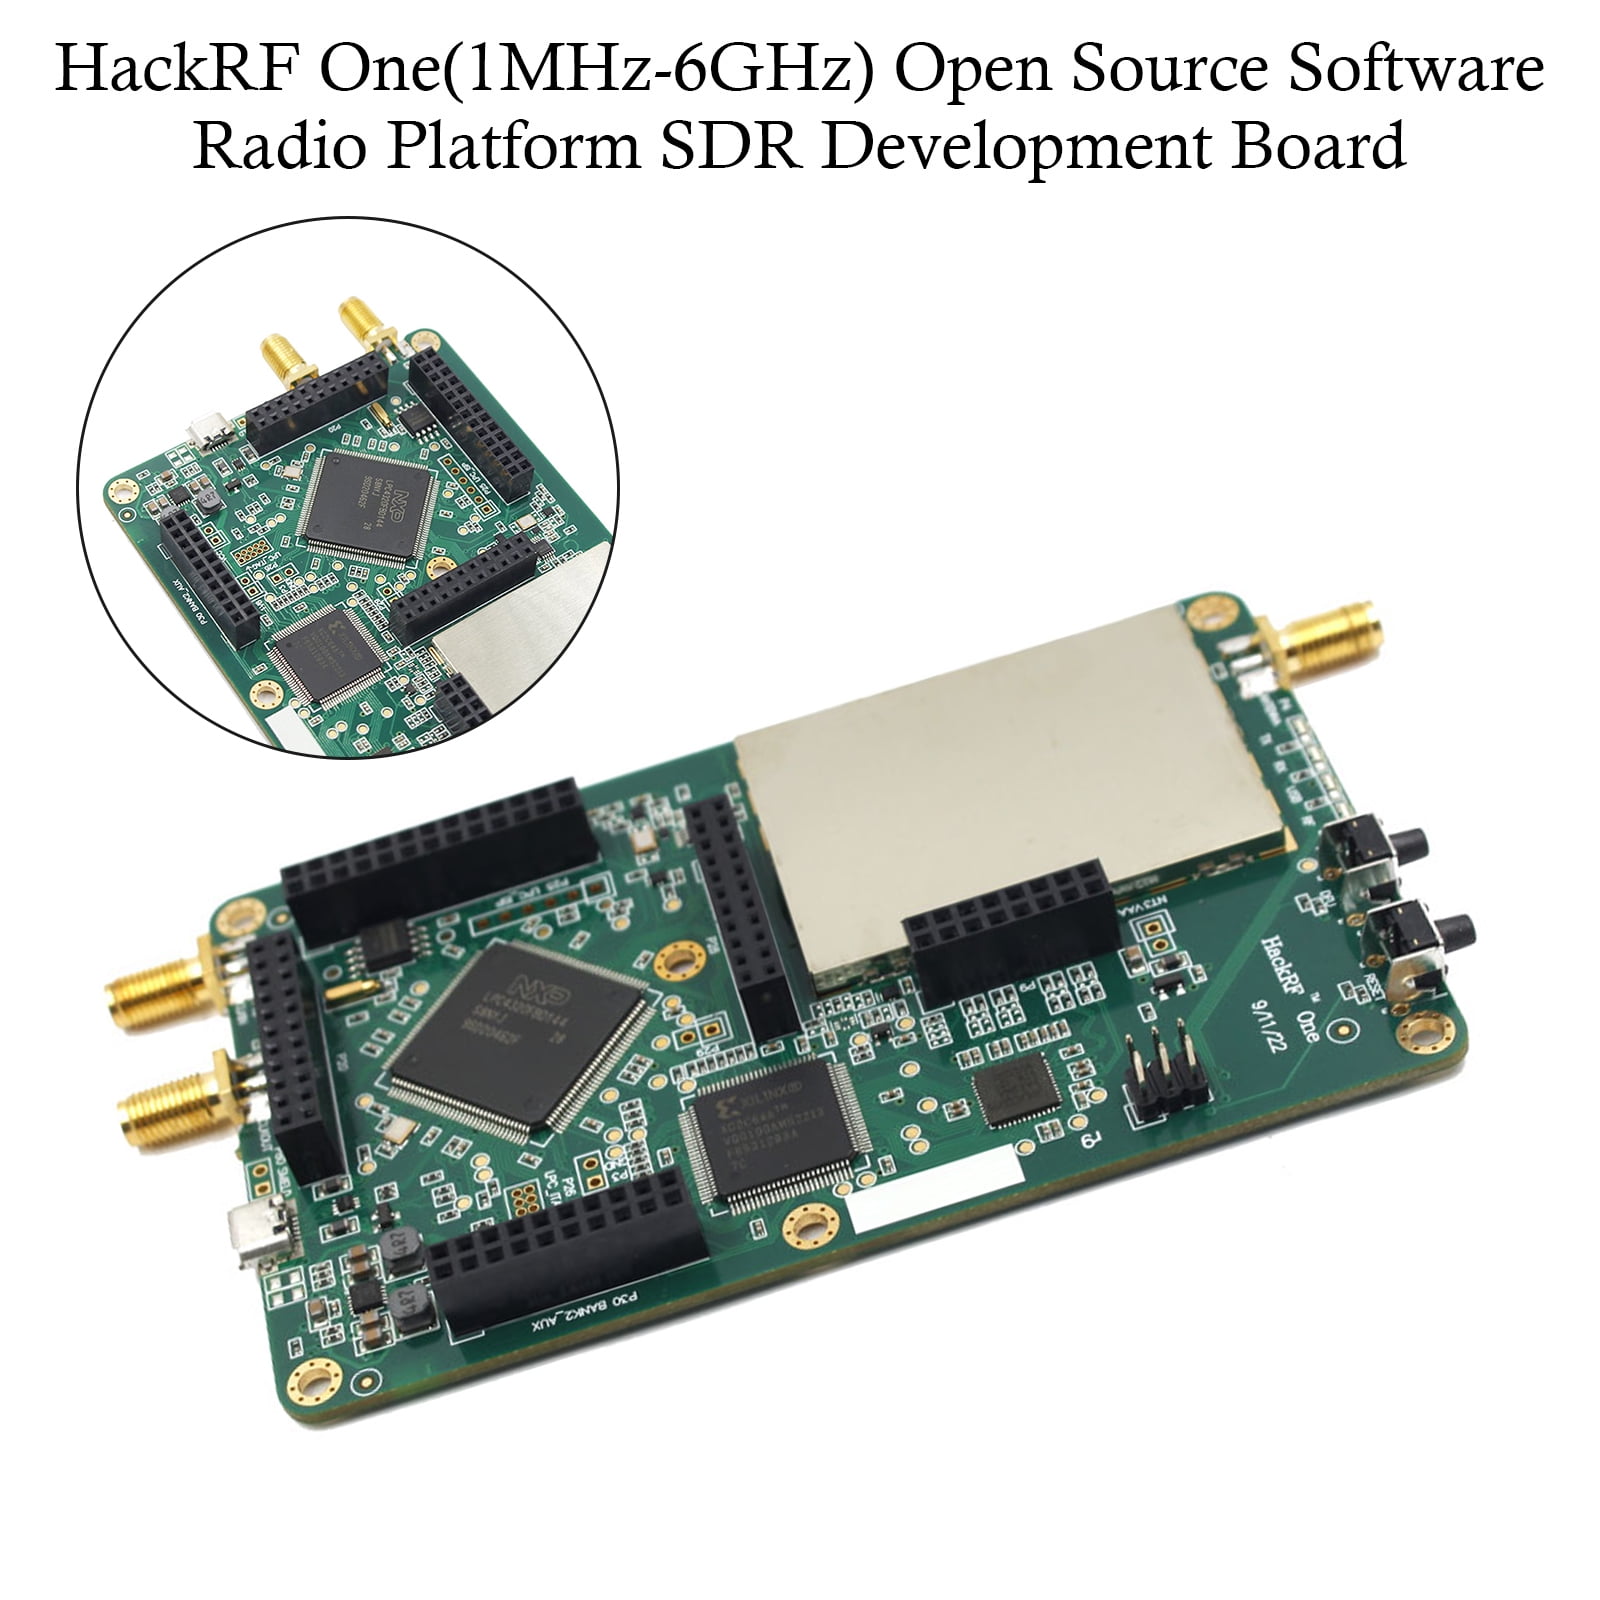 HackRF One 1MHz-6GHz Open Source Software Radio Platform SDR